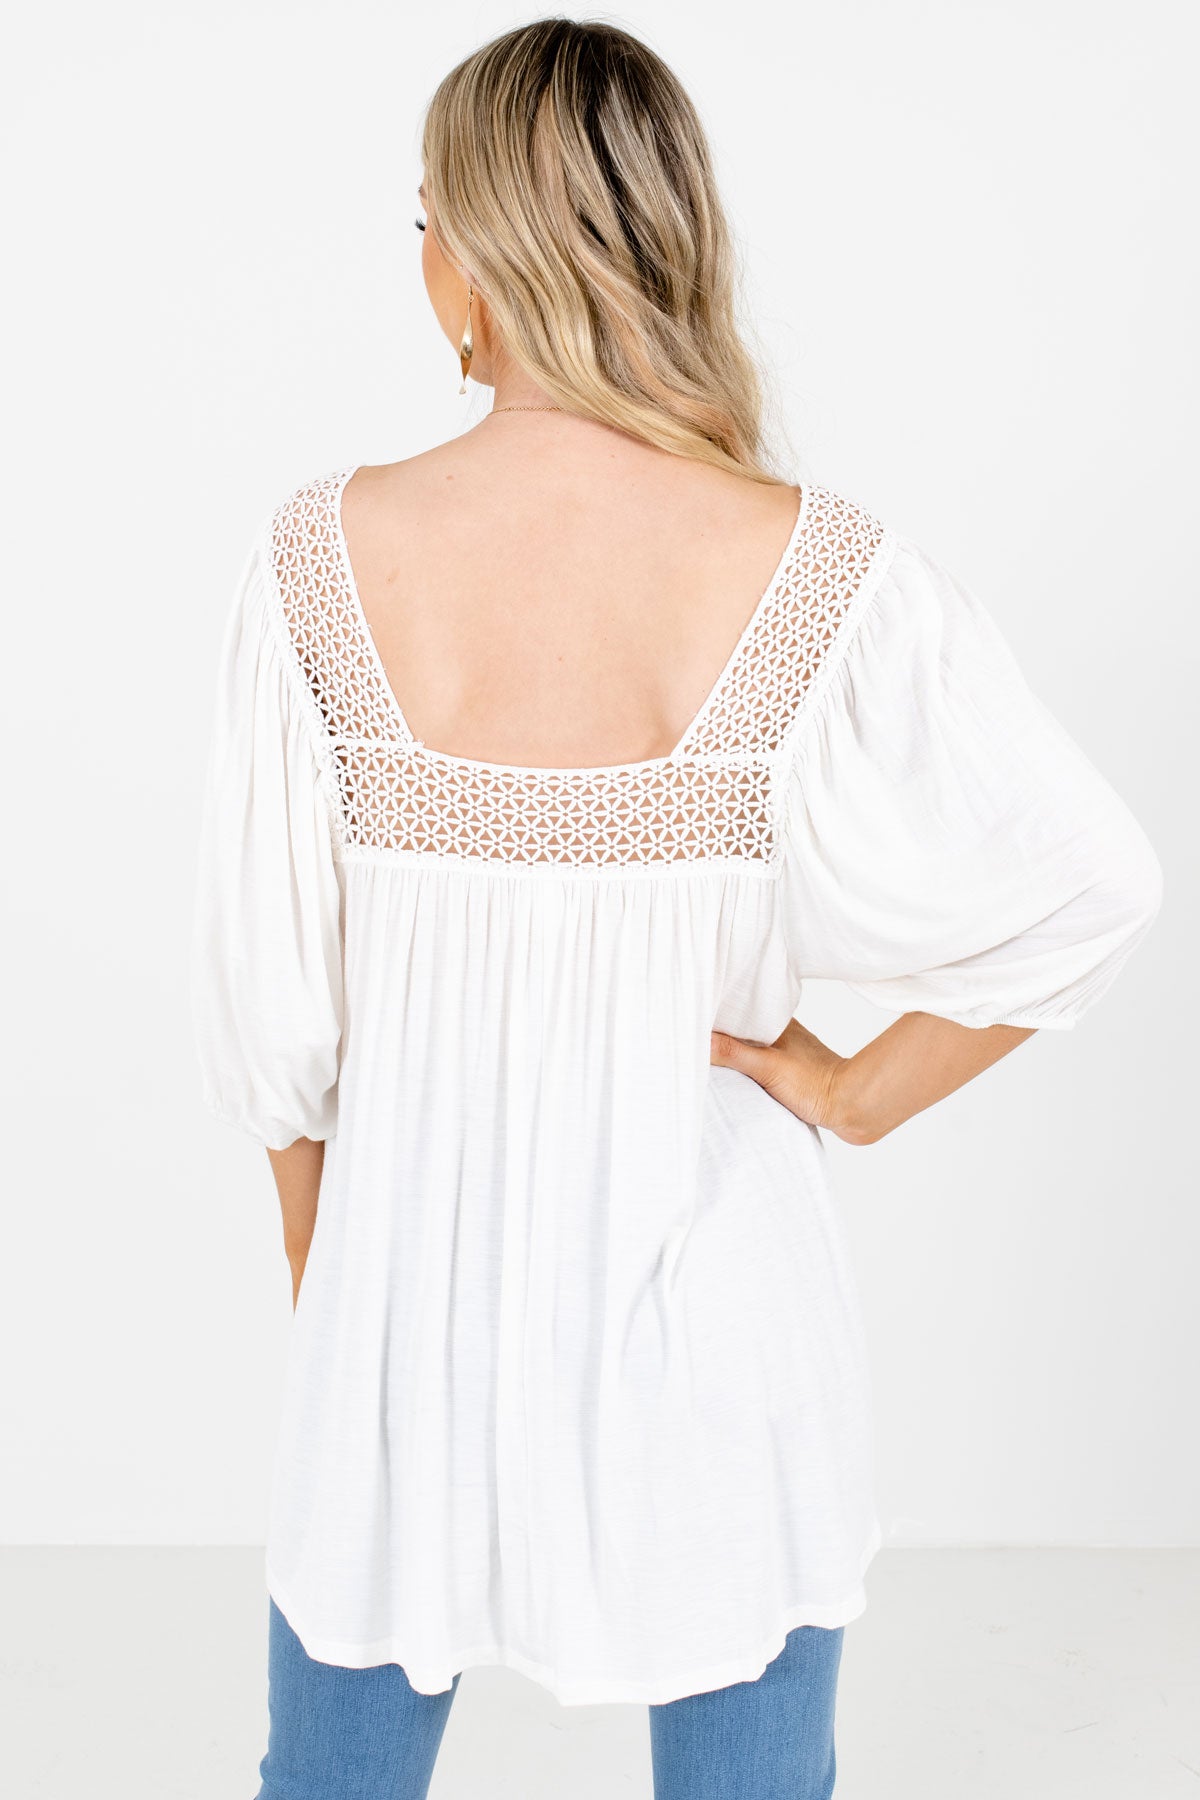 Women's White Crochet Detailed Boutique Blouse